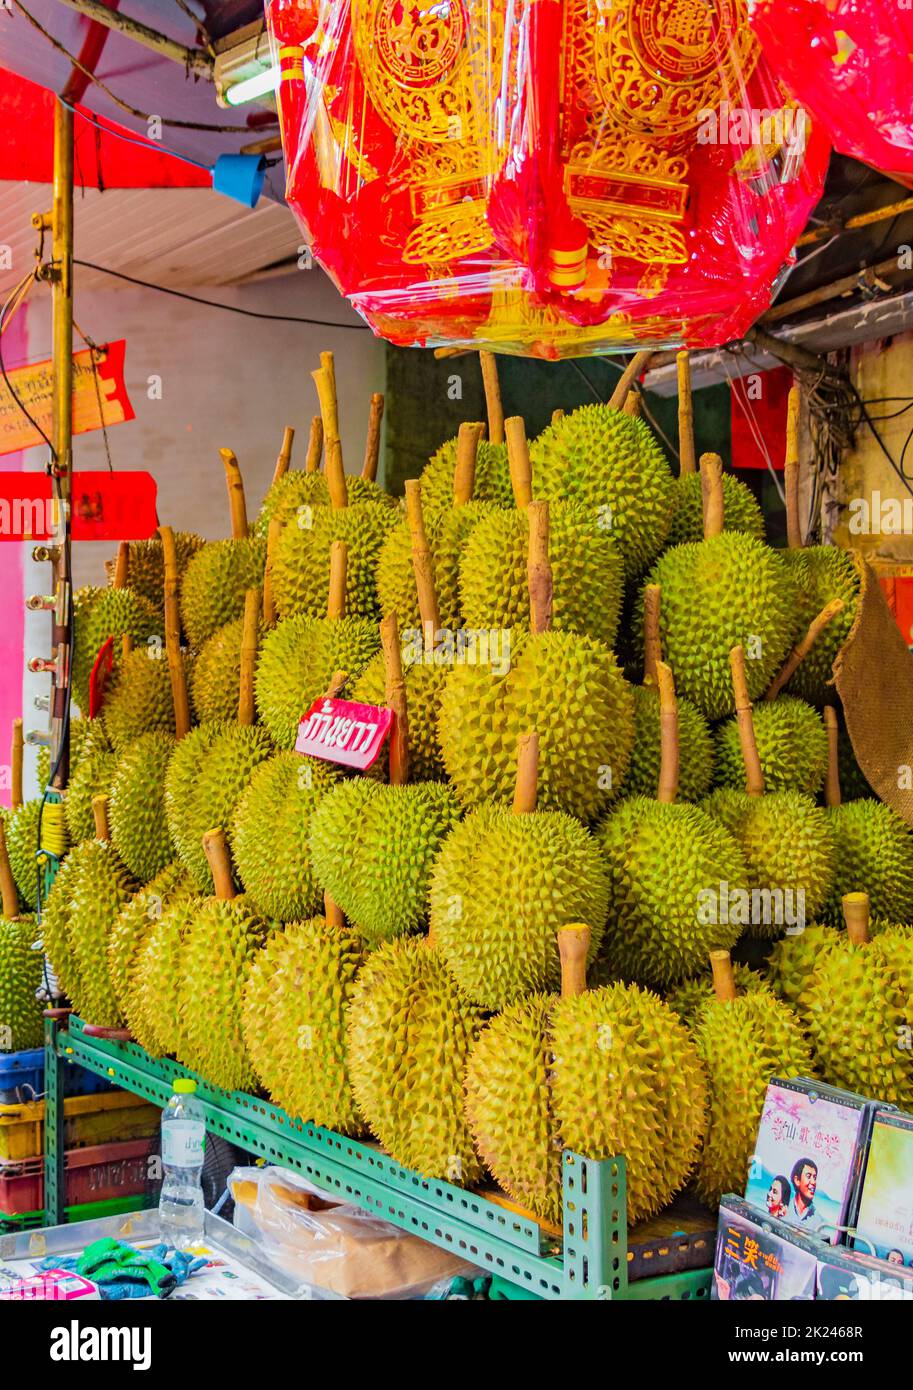 Bangkok Thaïlande 22. Mai 2018 Vente de nourriture thaïlandaise de la purian aux fruits purades dans Chinatown Bangkok Thaïlande. Banque D'Images